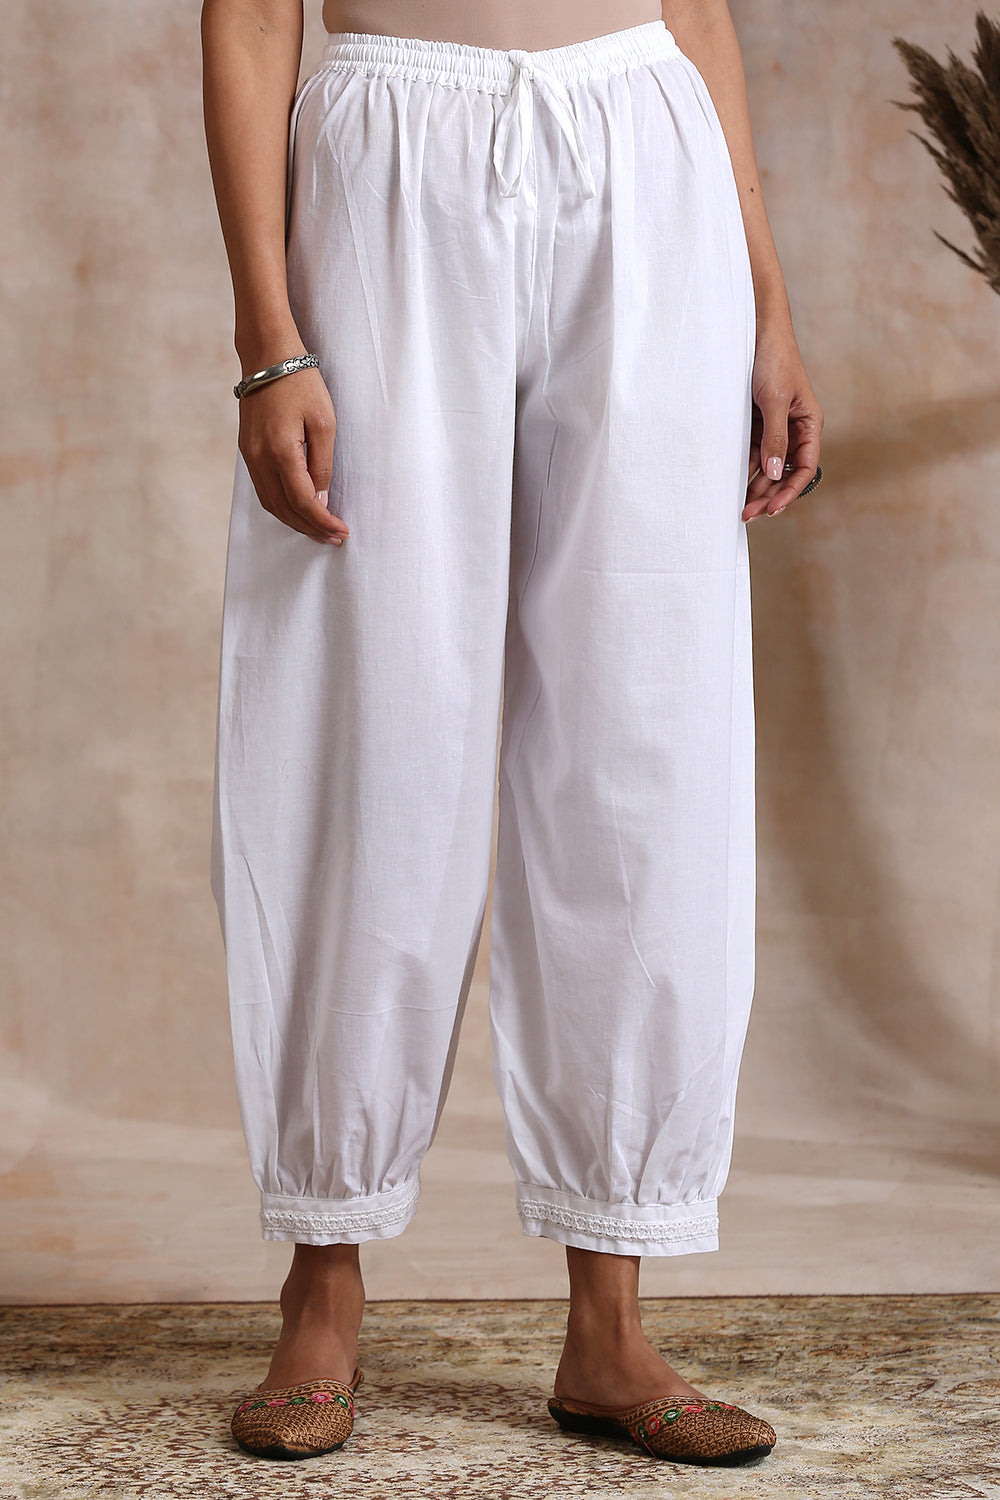 Clean White Cotton Lace Izhaar Pants